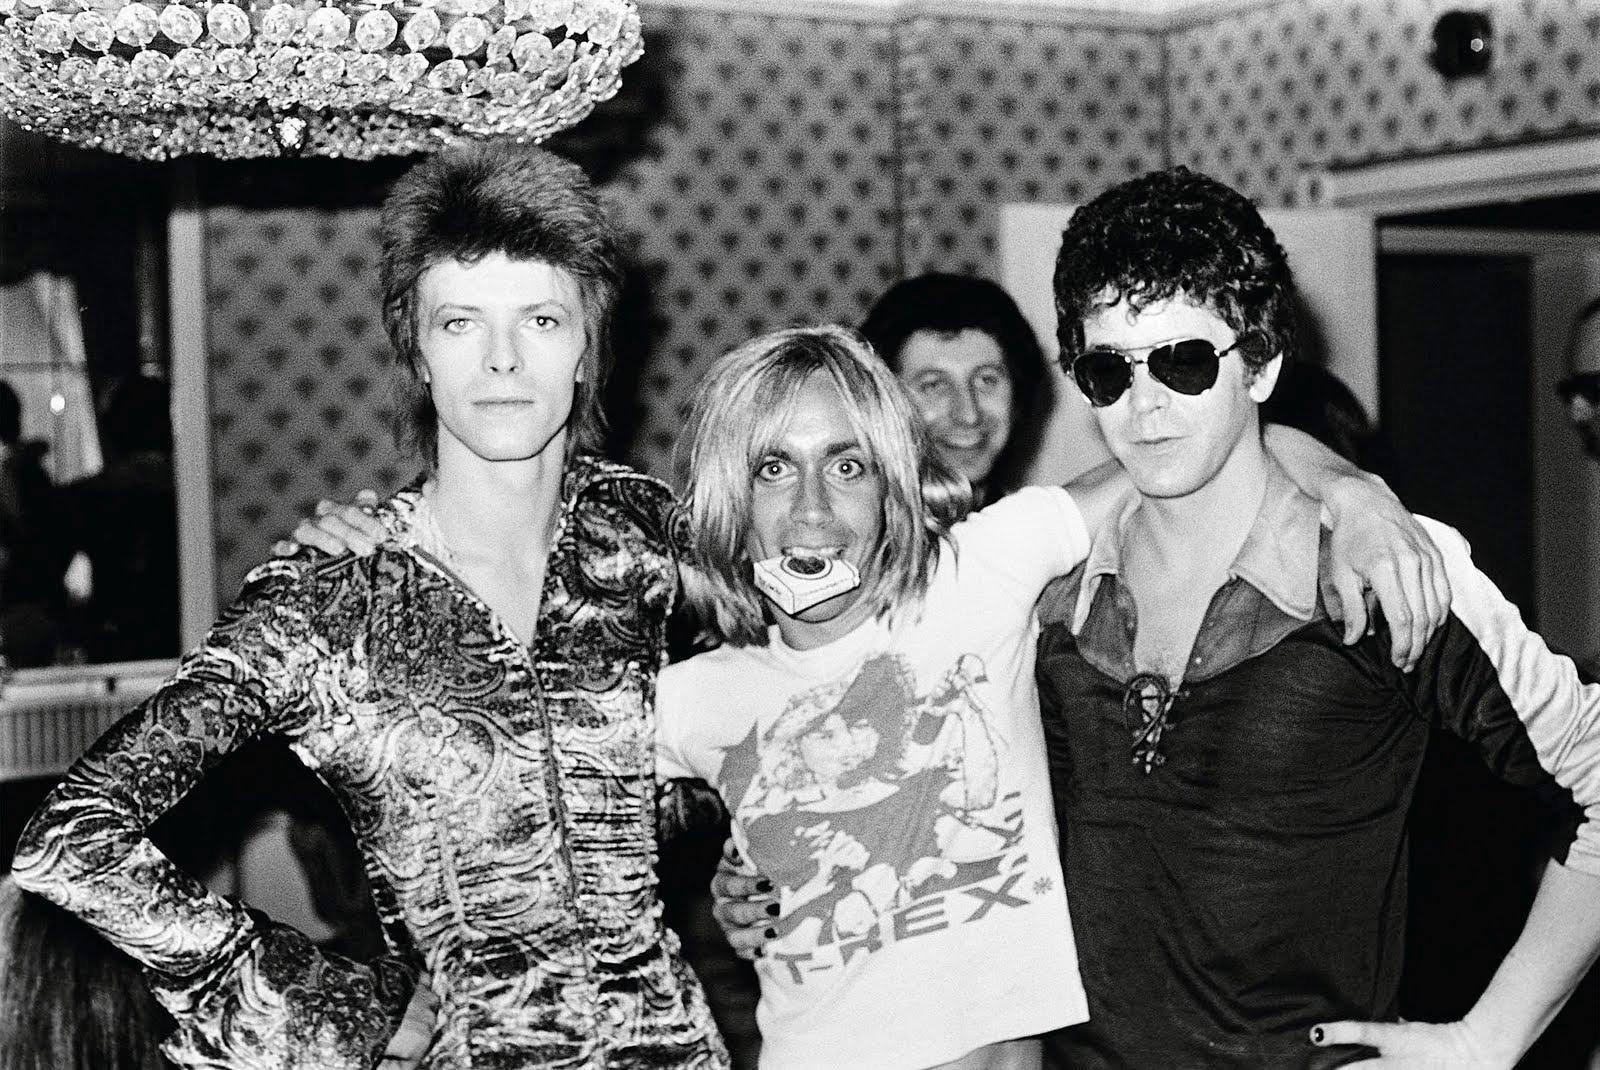 David Bowie, Iggy Pop & Lou Reed, Londoner Dorchester Hotel, 1972 von Mick Rock

Auflage: 29/50
Signiert und nummeriert von Mick Rock. 
Medium: Silbergelatine Fotodruck auf Papier in limitierter Auflage
Größe gerahmt: 27" x 33" Zoll 

"Es war eine